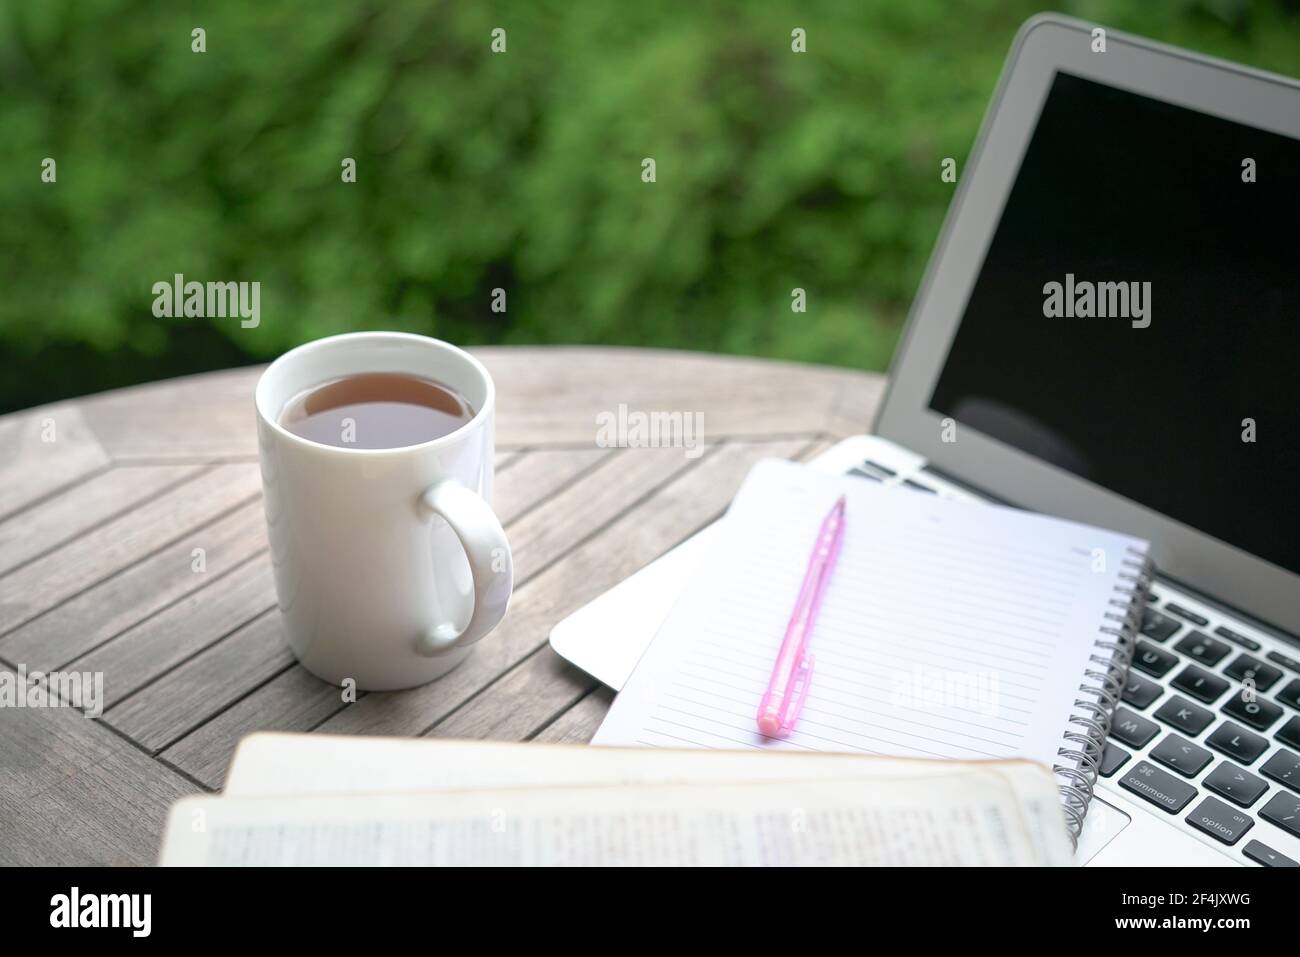 Tazza di caffè, blocco note, libro aperto, penna e computer portatile sul tavolo con piante verdi sullo sfondo. Foto Stock